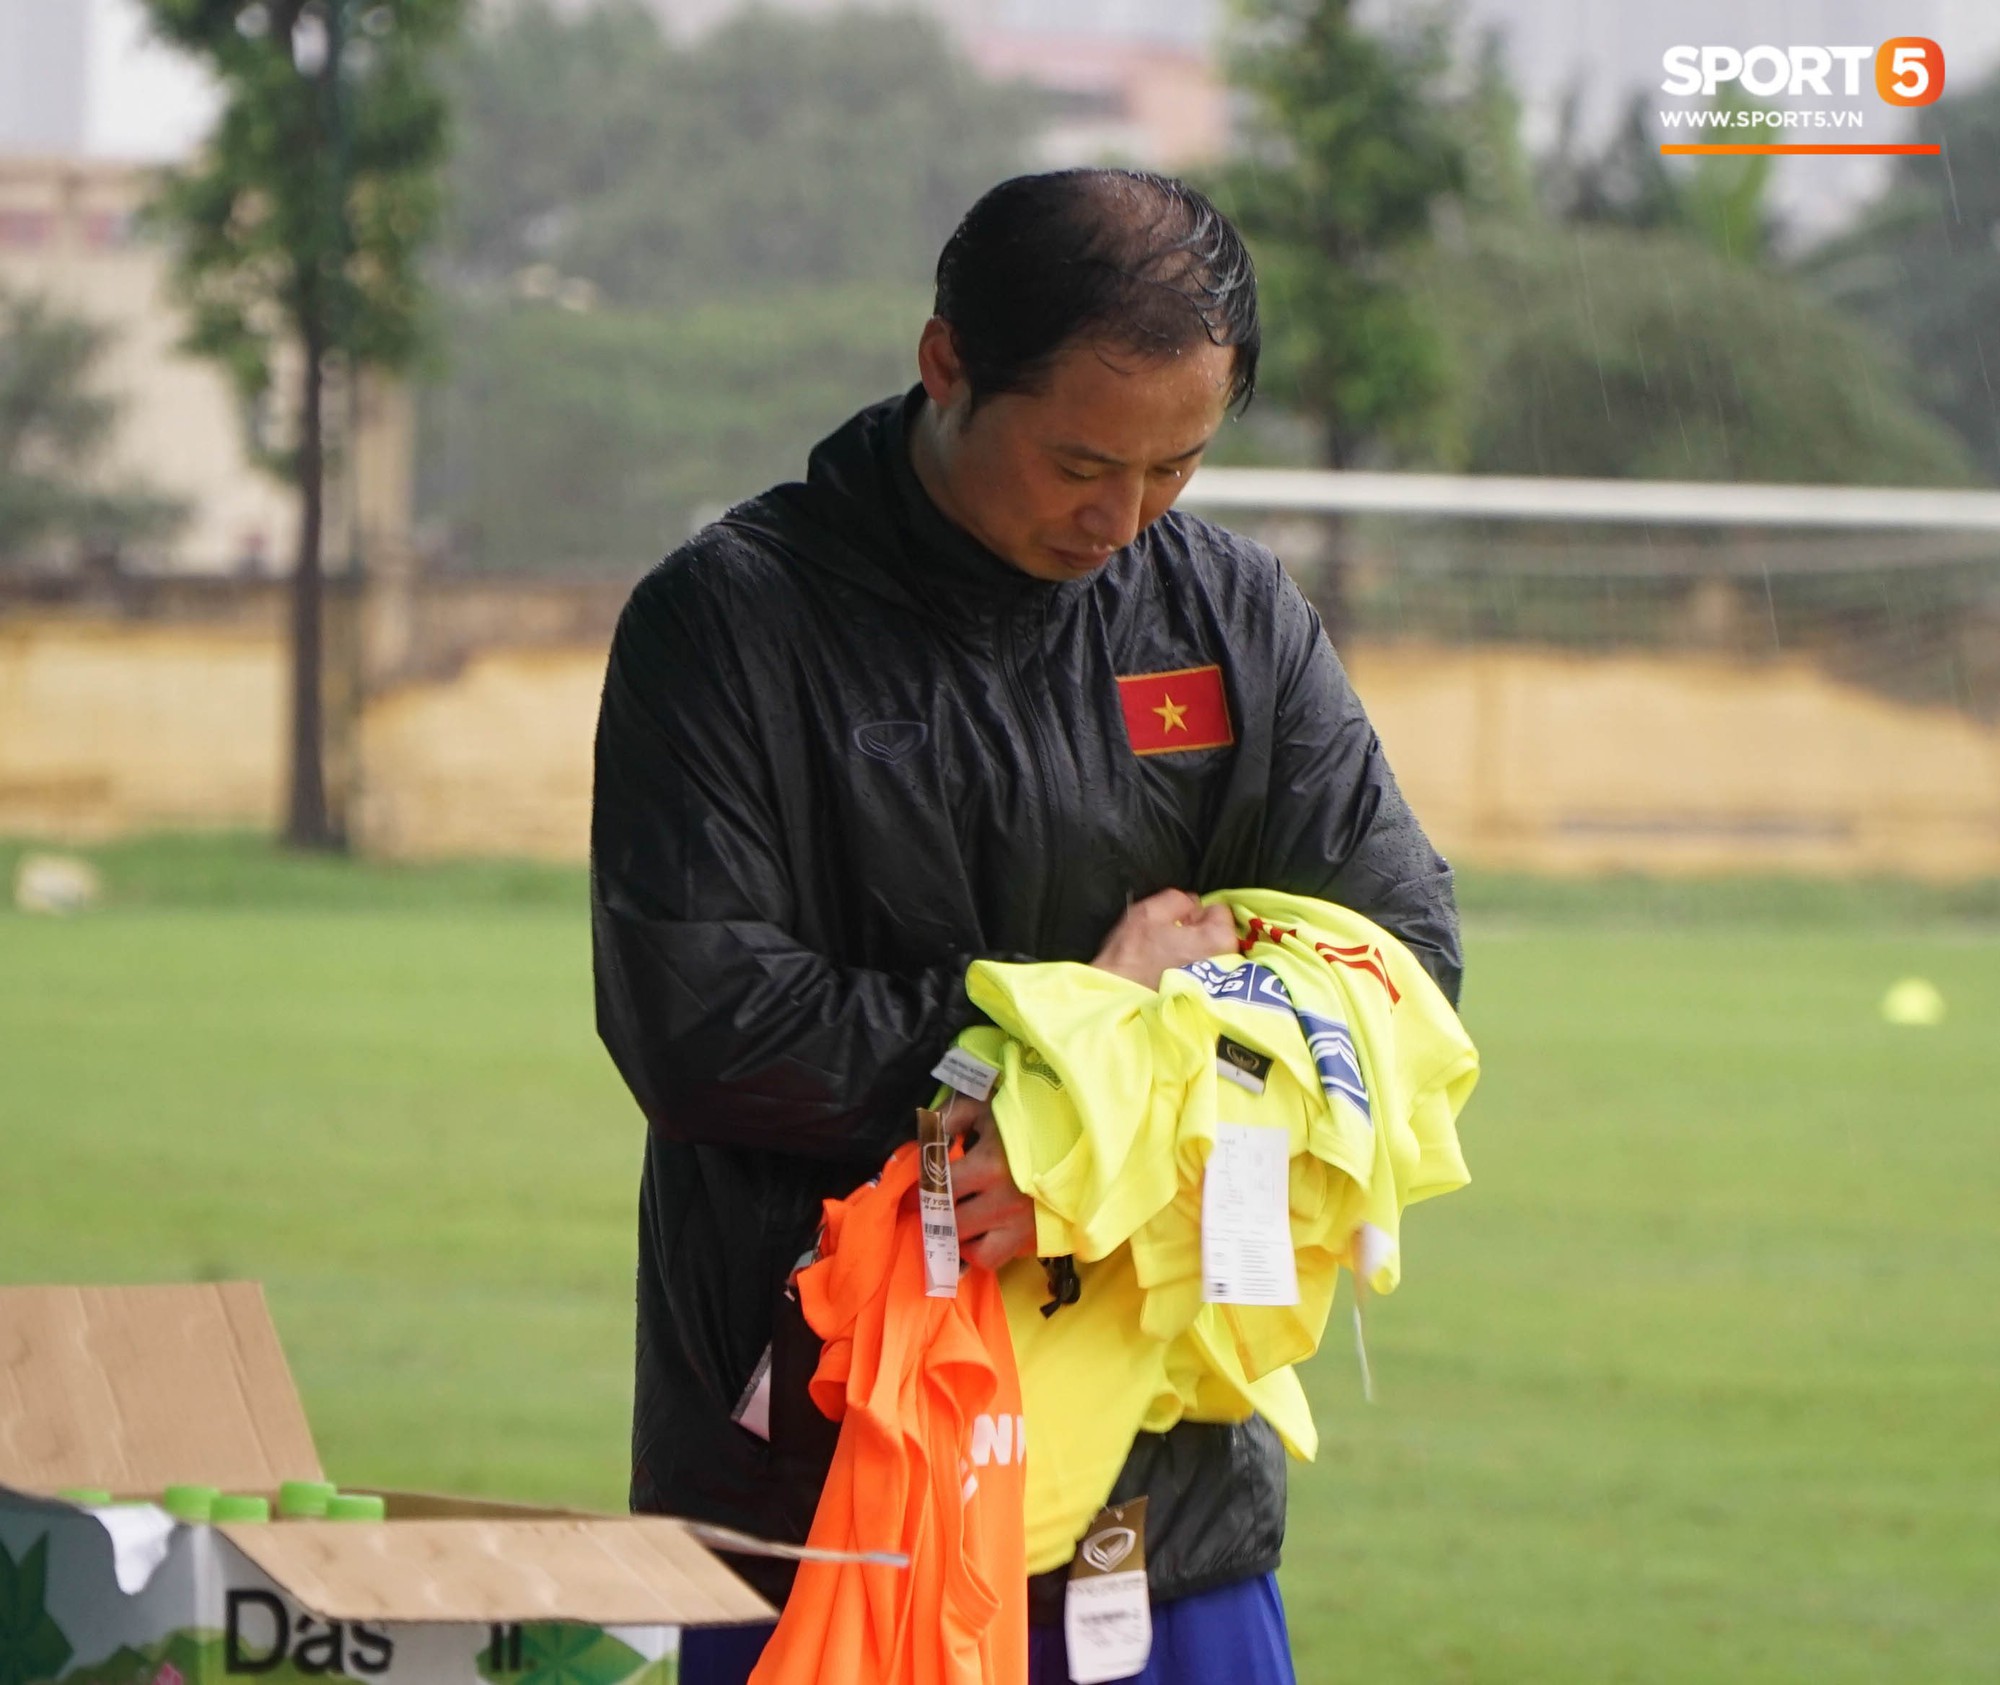 U23 Việt Nam tập luyện dưới trời mưa tầm tã trong ngày đầu làm việc với trợ lý mới thầy Park - Ảnh 3.